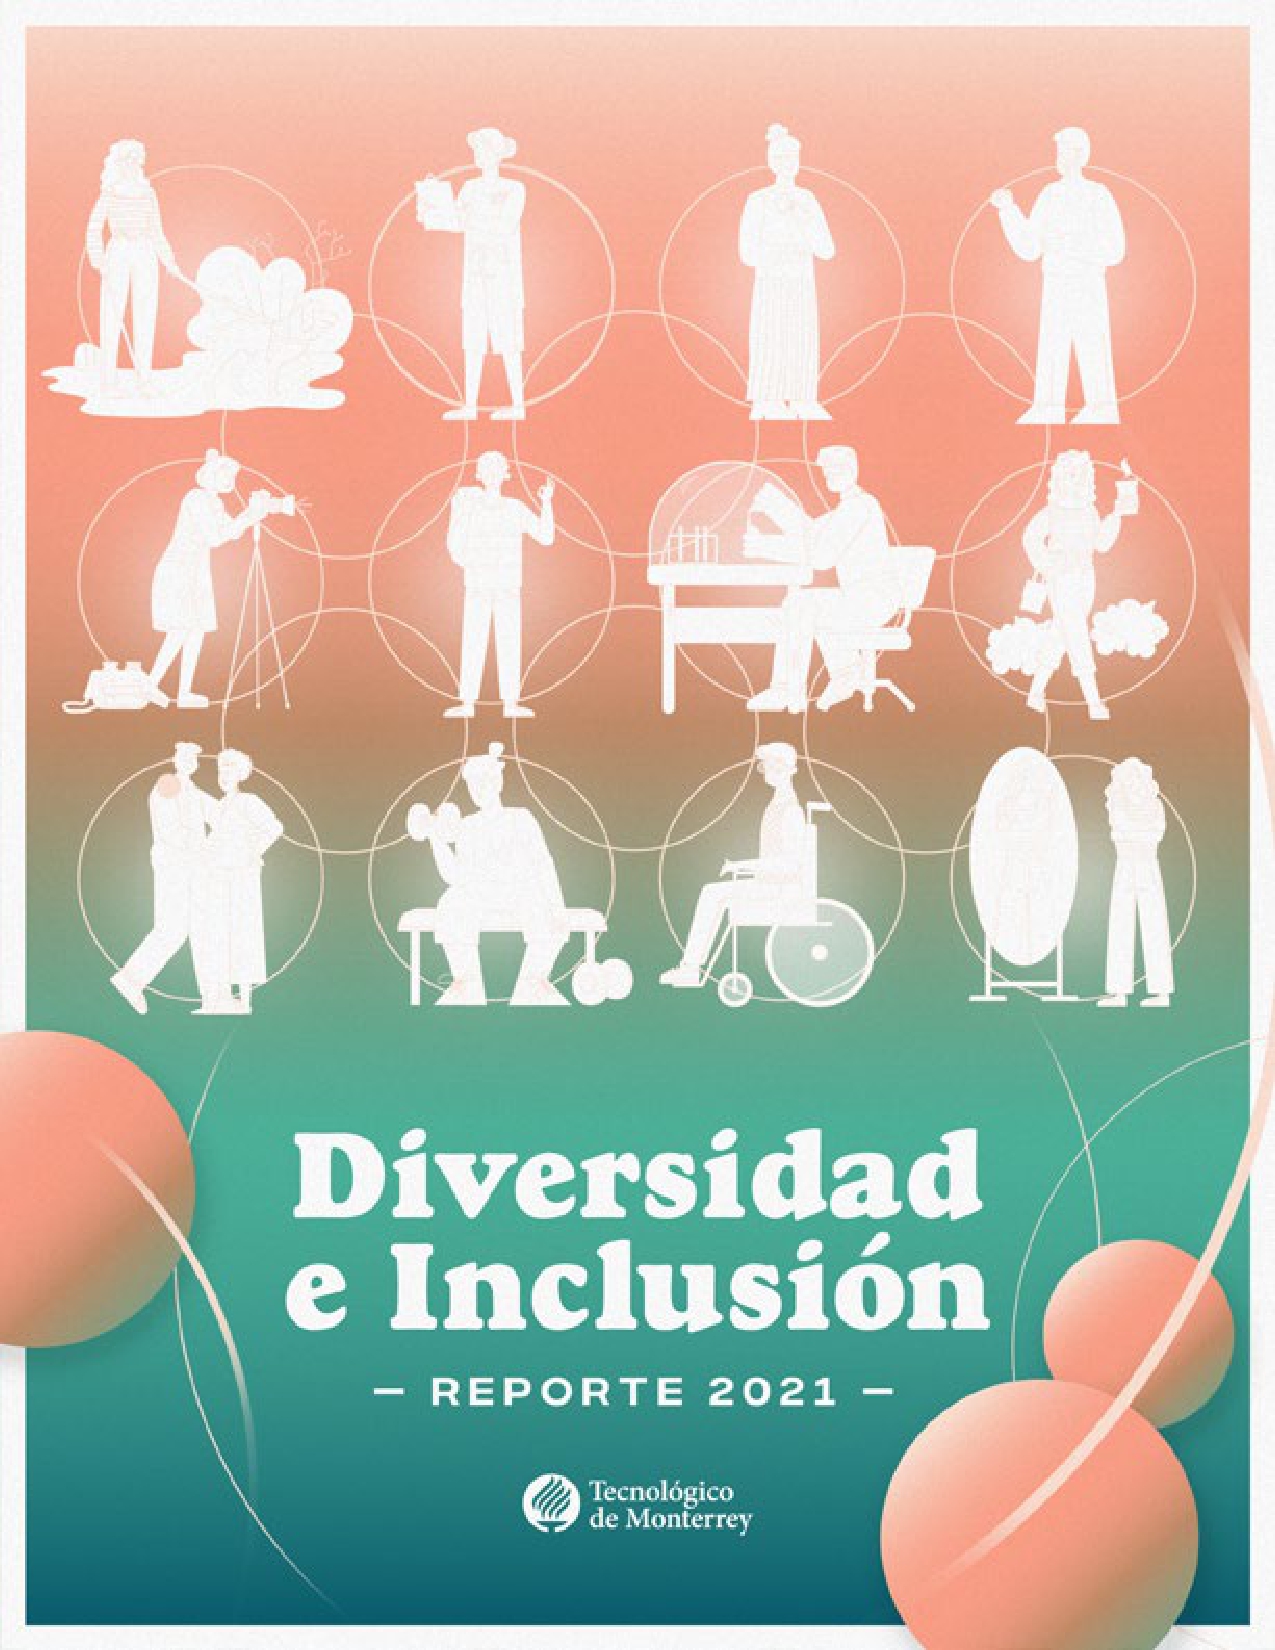 El “Reporte de Diversidad e Inclusión 2021” recopila más de 190 iniciativas y acciones del Tecnológico de Monterrey